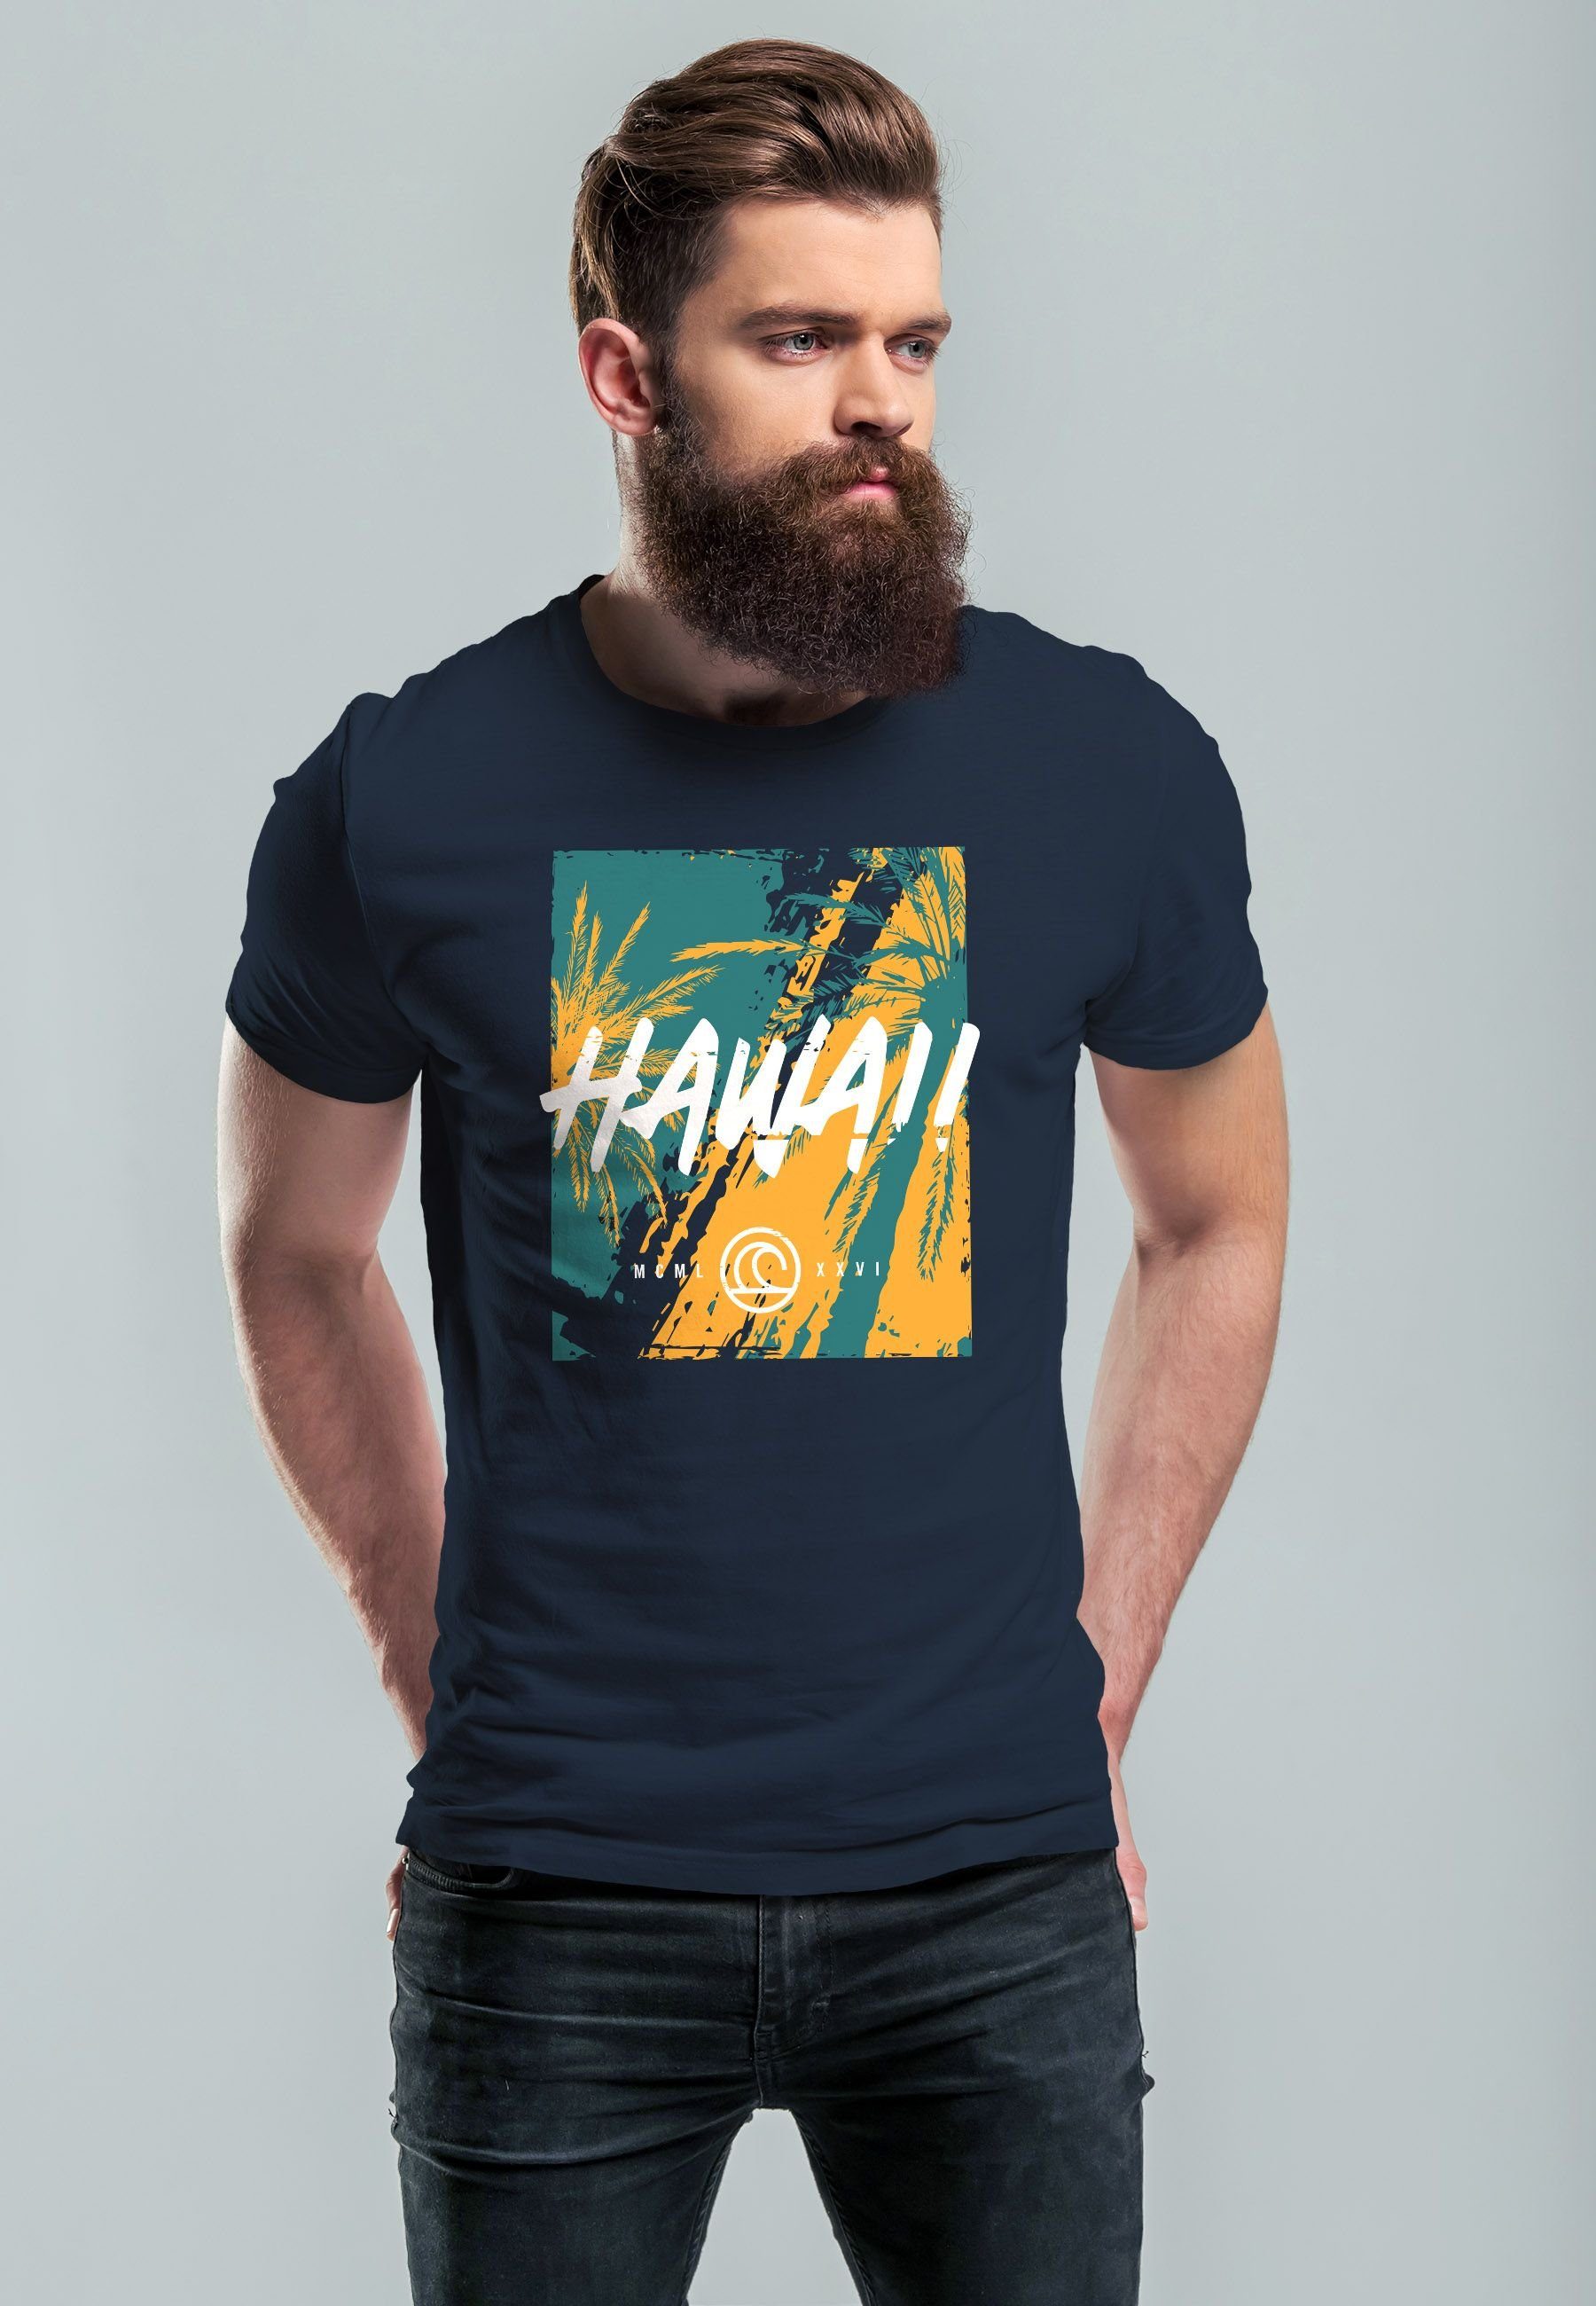 Print-Shirt navy Print Hawaii mit Neverless Surfing Fashion Print T-Shirt Aufdruck Str Herren Sommer Palmen